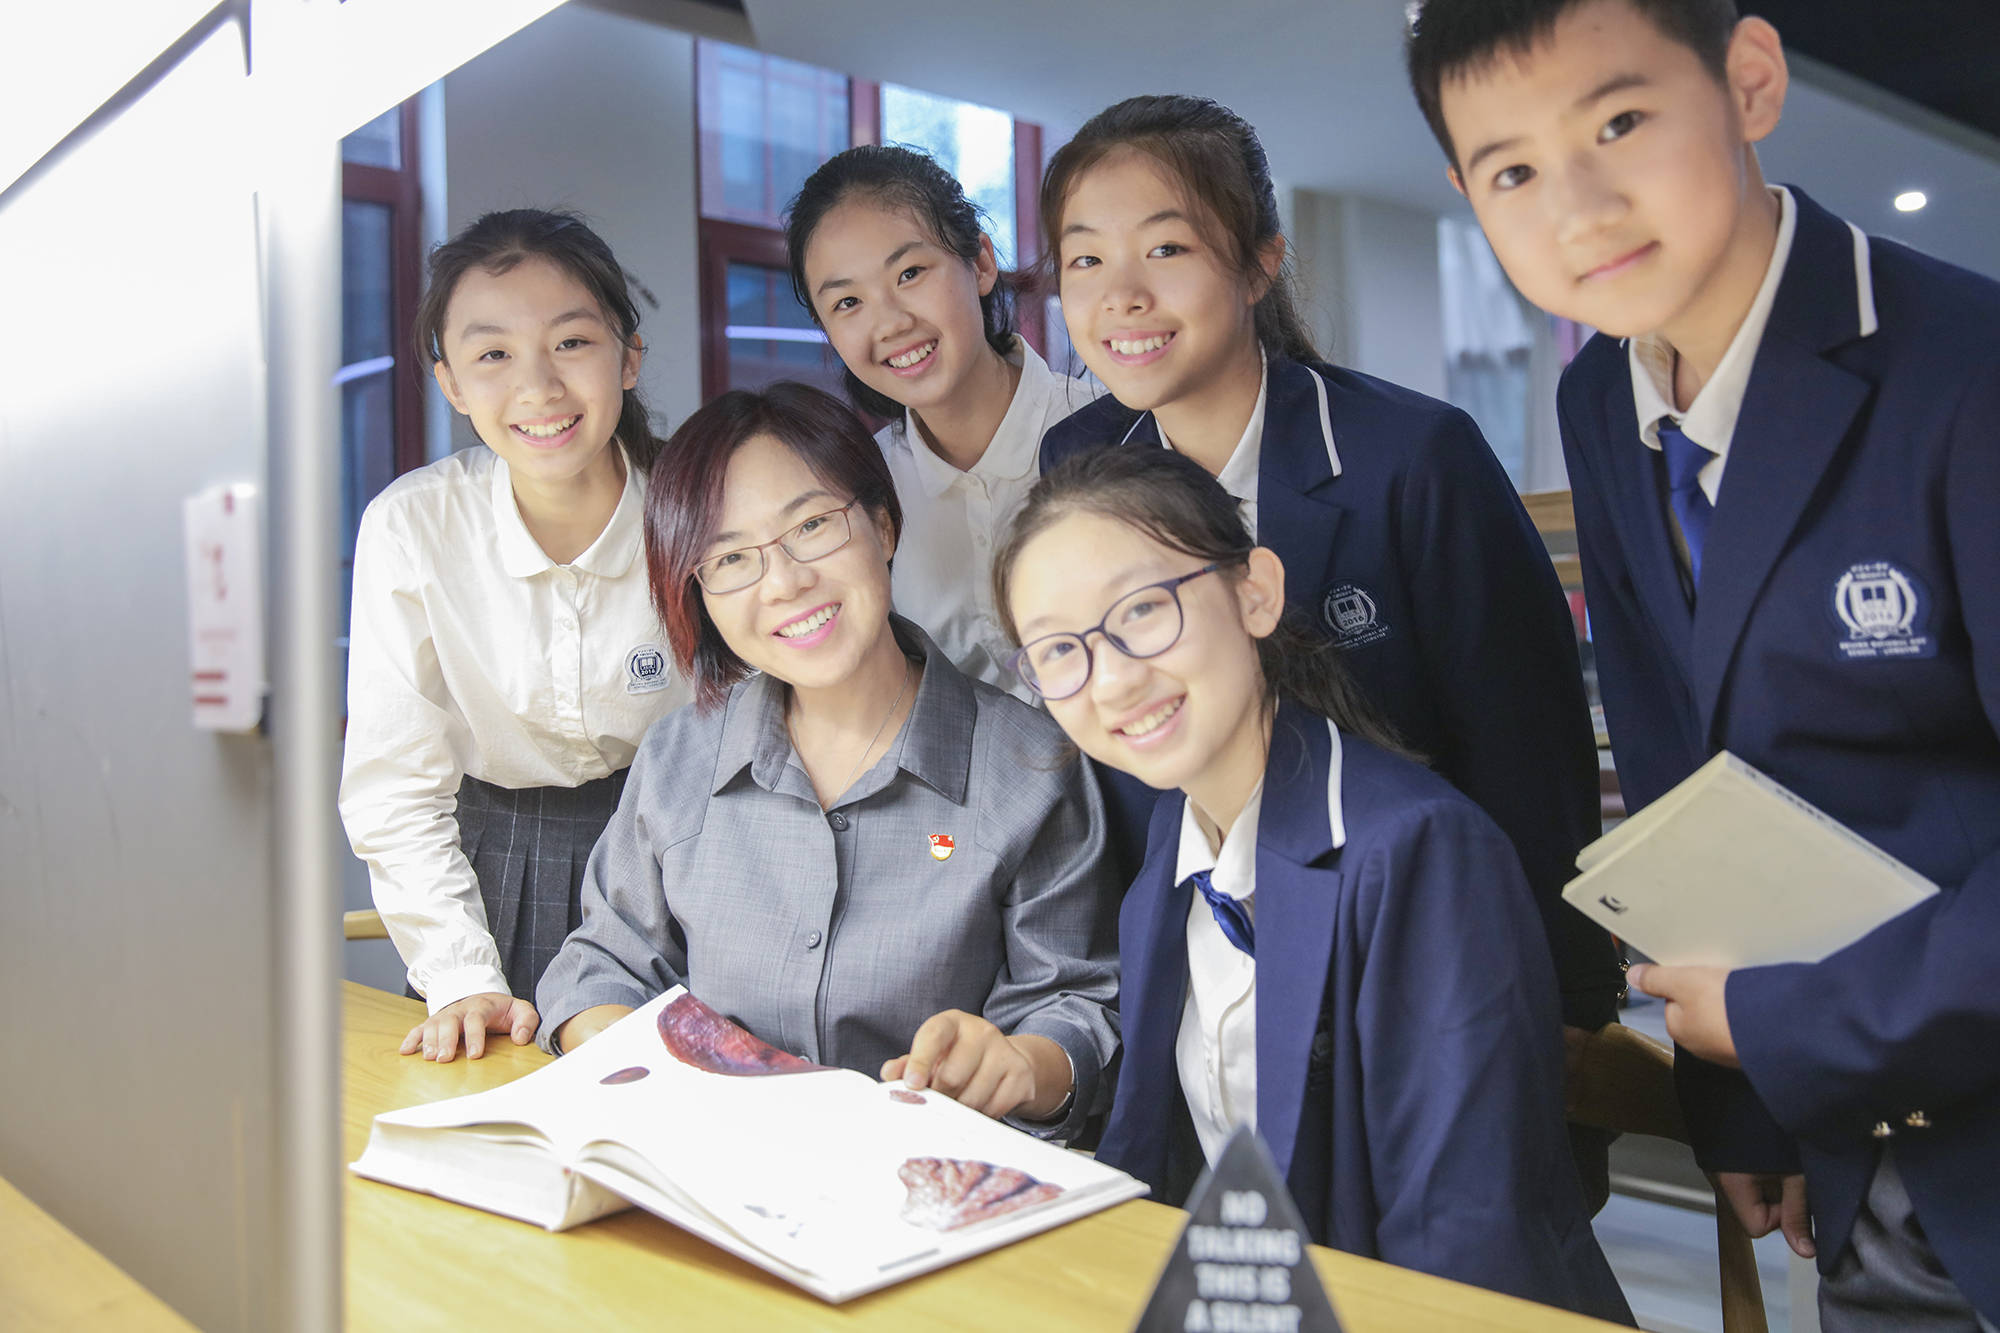 北京十一学校龙樾实验中学校长王海霞创造适合每位学生发展的教育